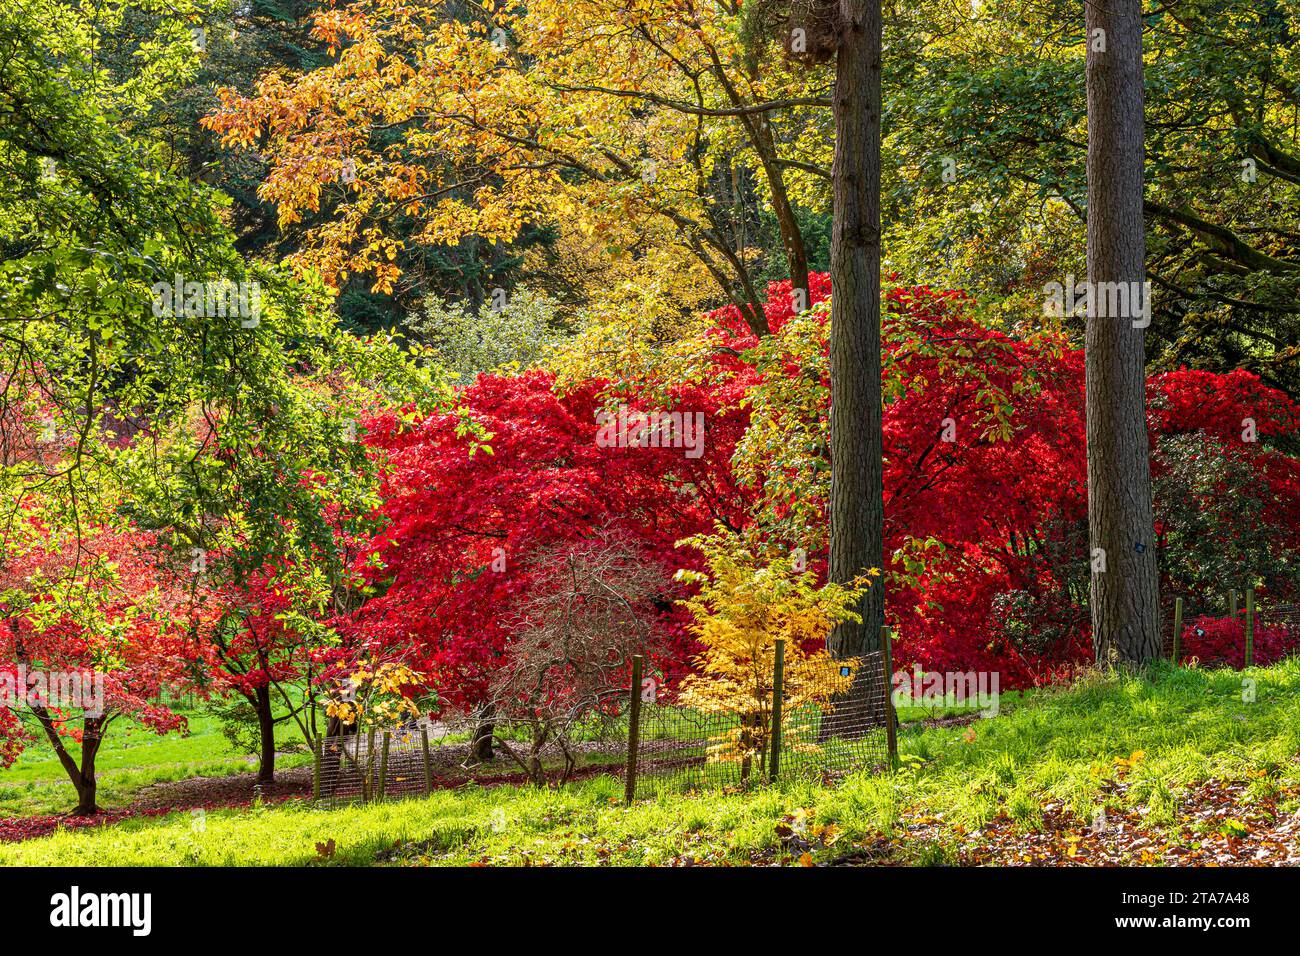 Couleurs d'automne à Batsford Arboretum, Batsford, Moreton in Marsh, Gloucestershire, Angleterre Royaume-Uni Banque D'Images